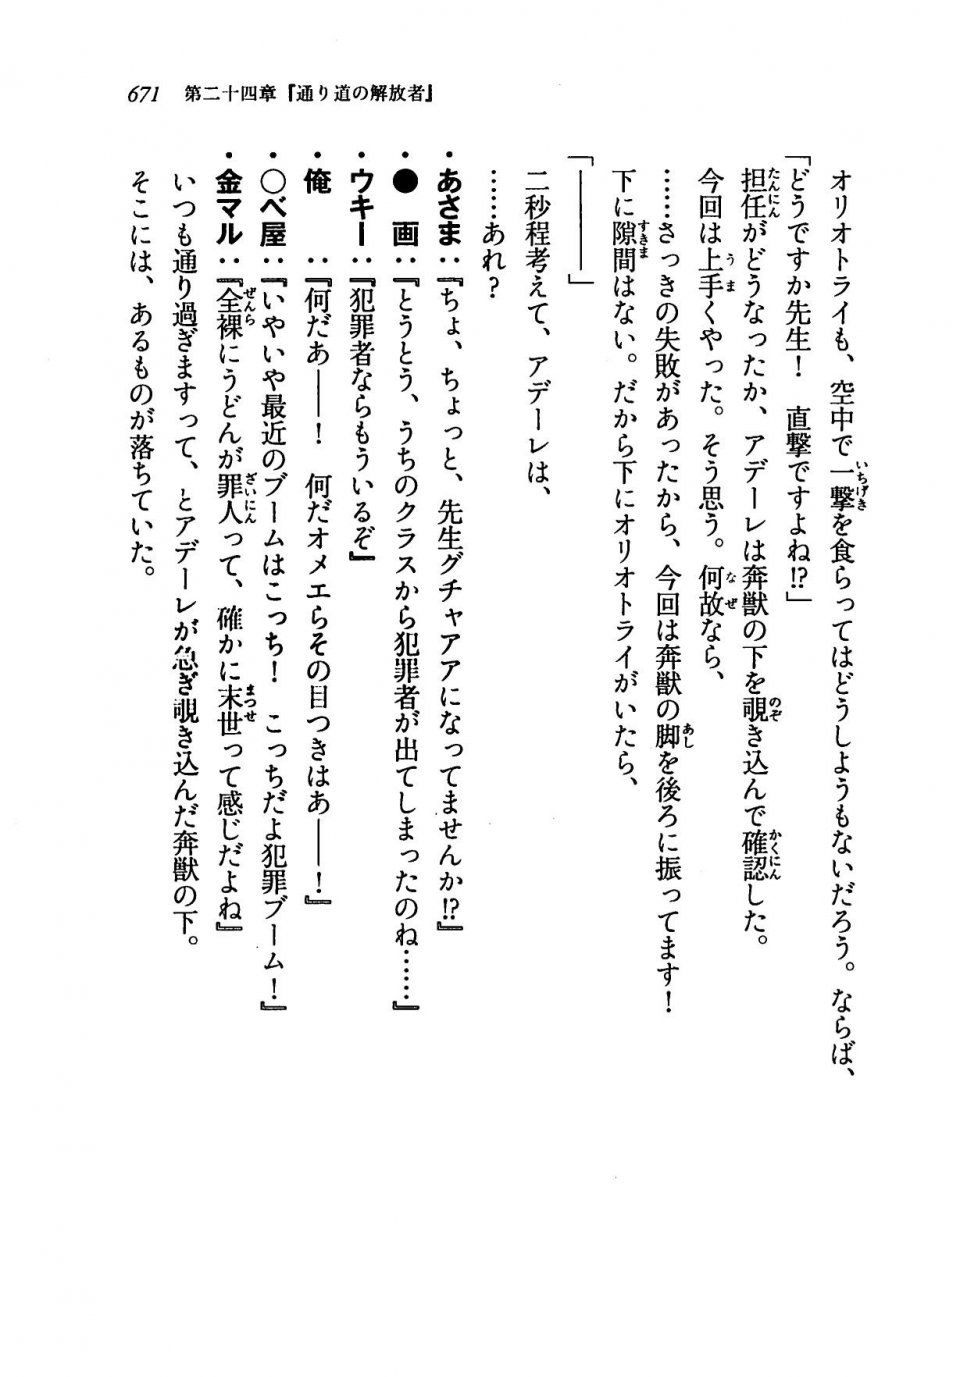 Kyoukai Senjou no Horizon LN Vol 19(8A) - Photo #671